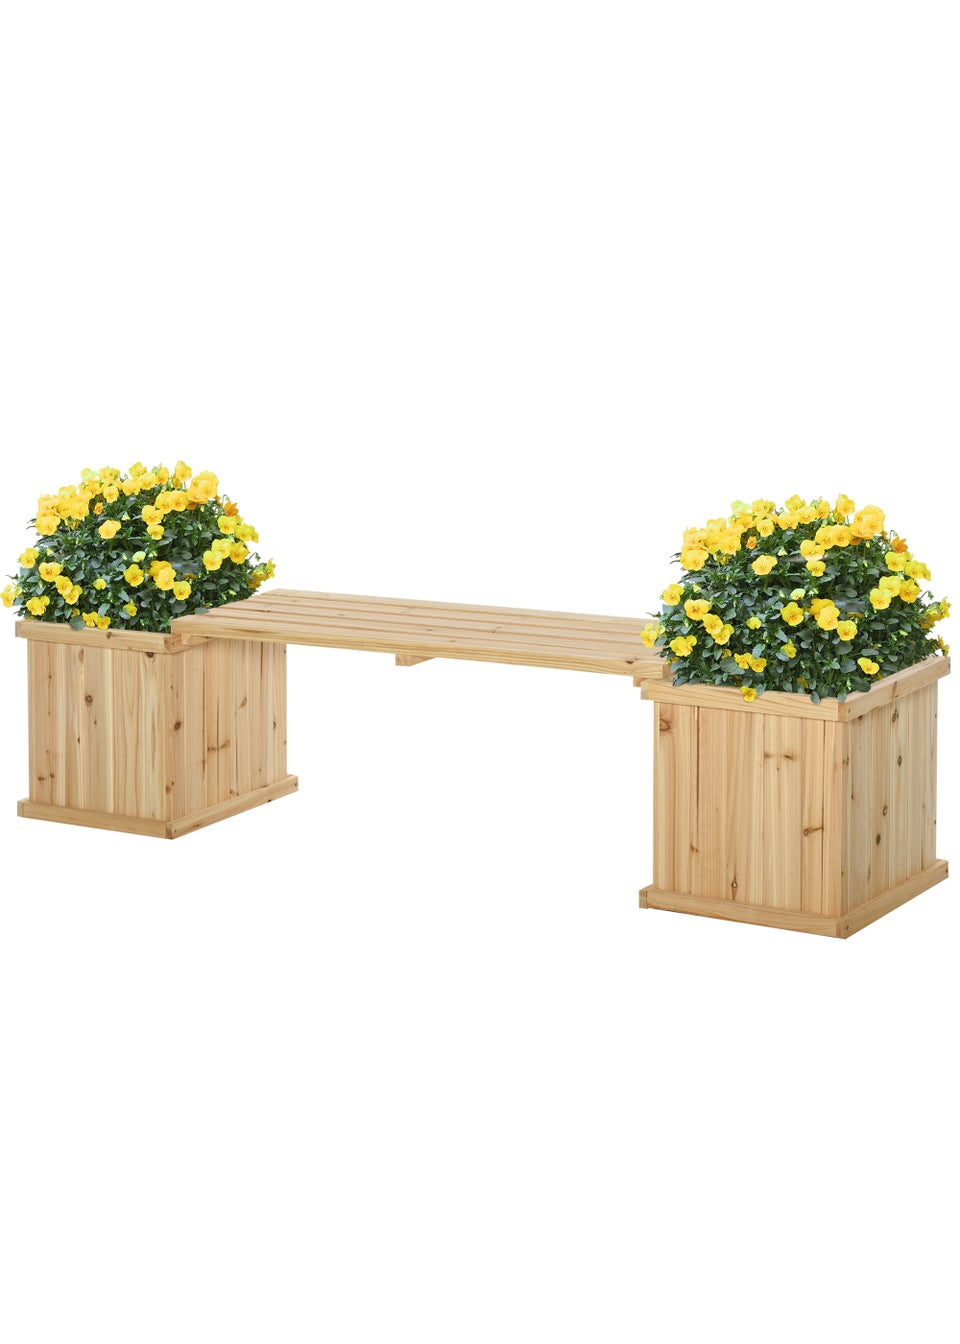 Outsunny Wooden Garden Bench Planter  (176cm x 38cm x 40cm)